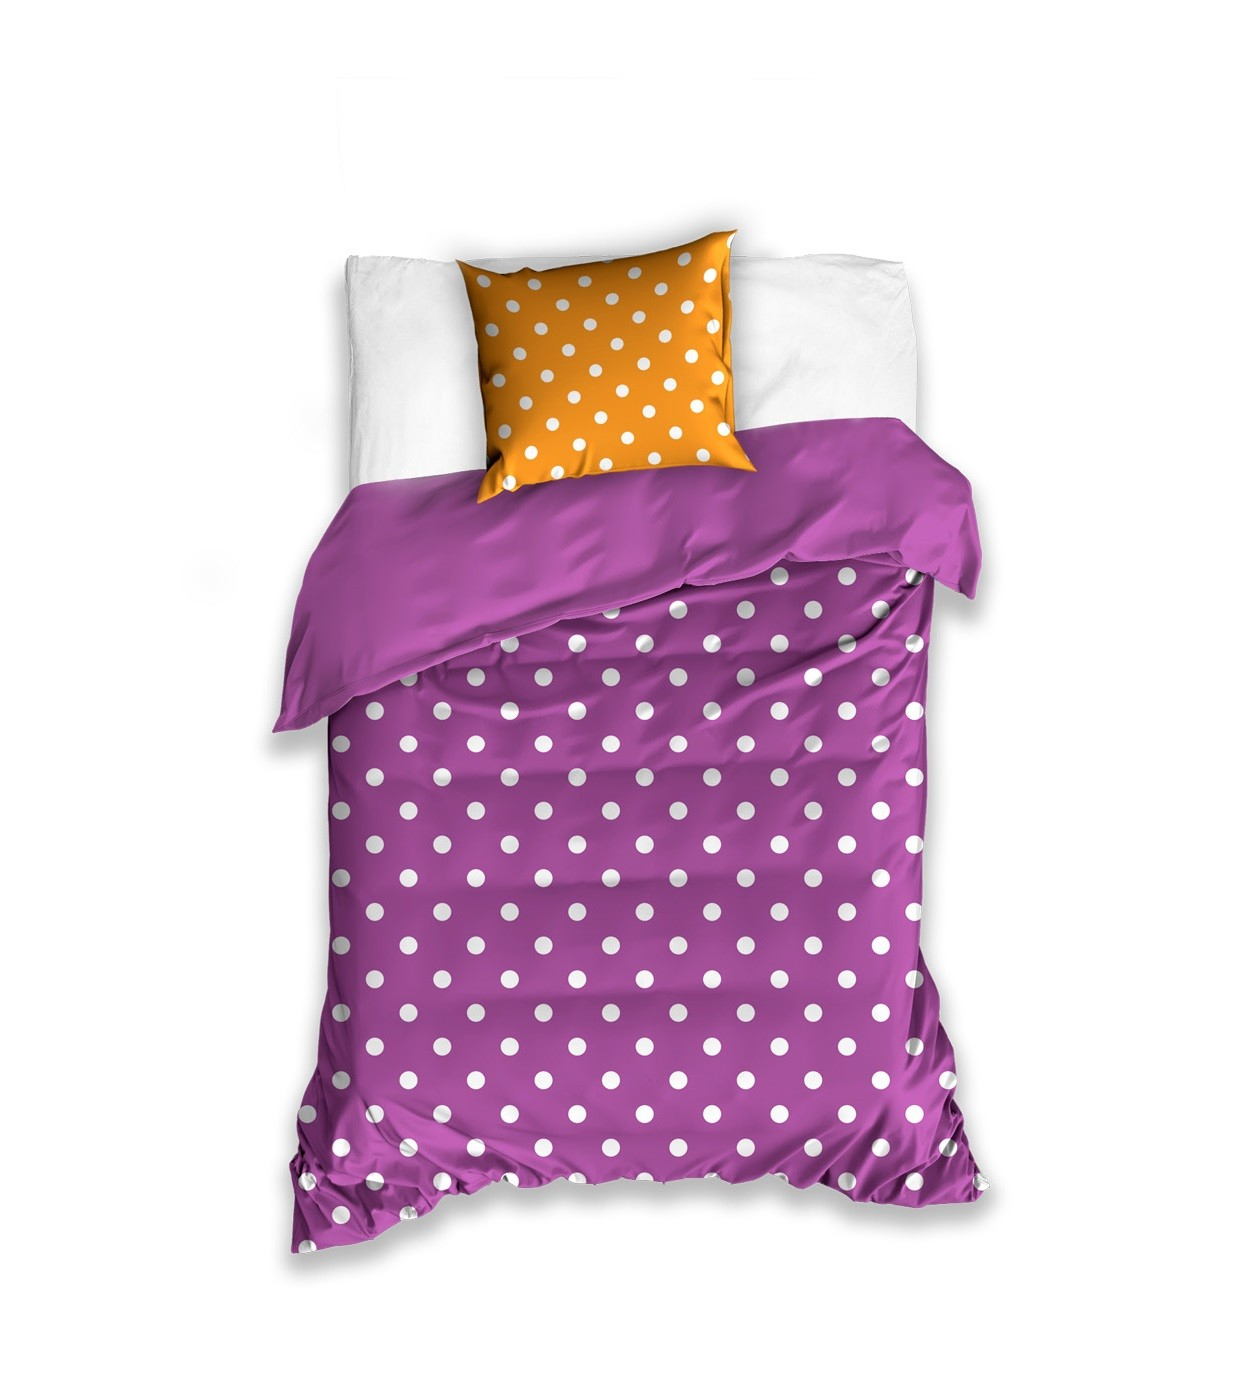 Detská posteľná návliečka vo fialovej farbe a bielymi bodkami